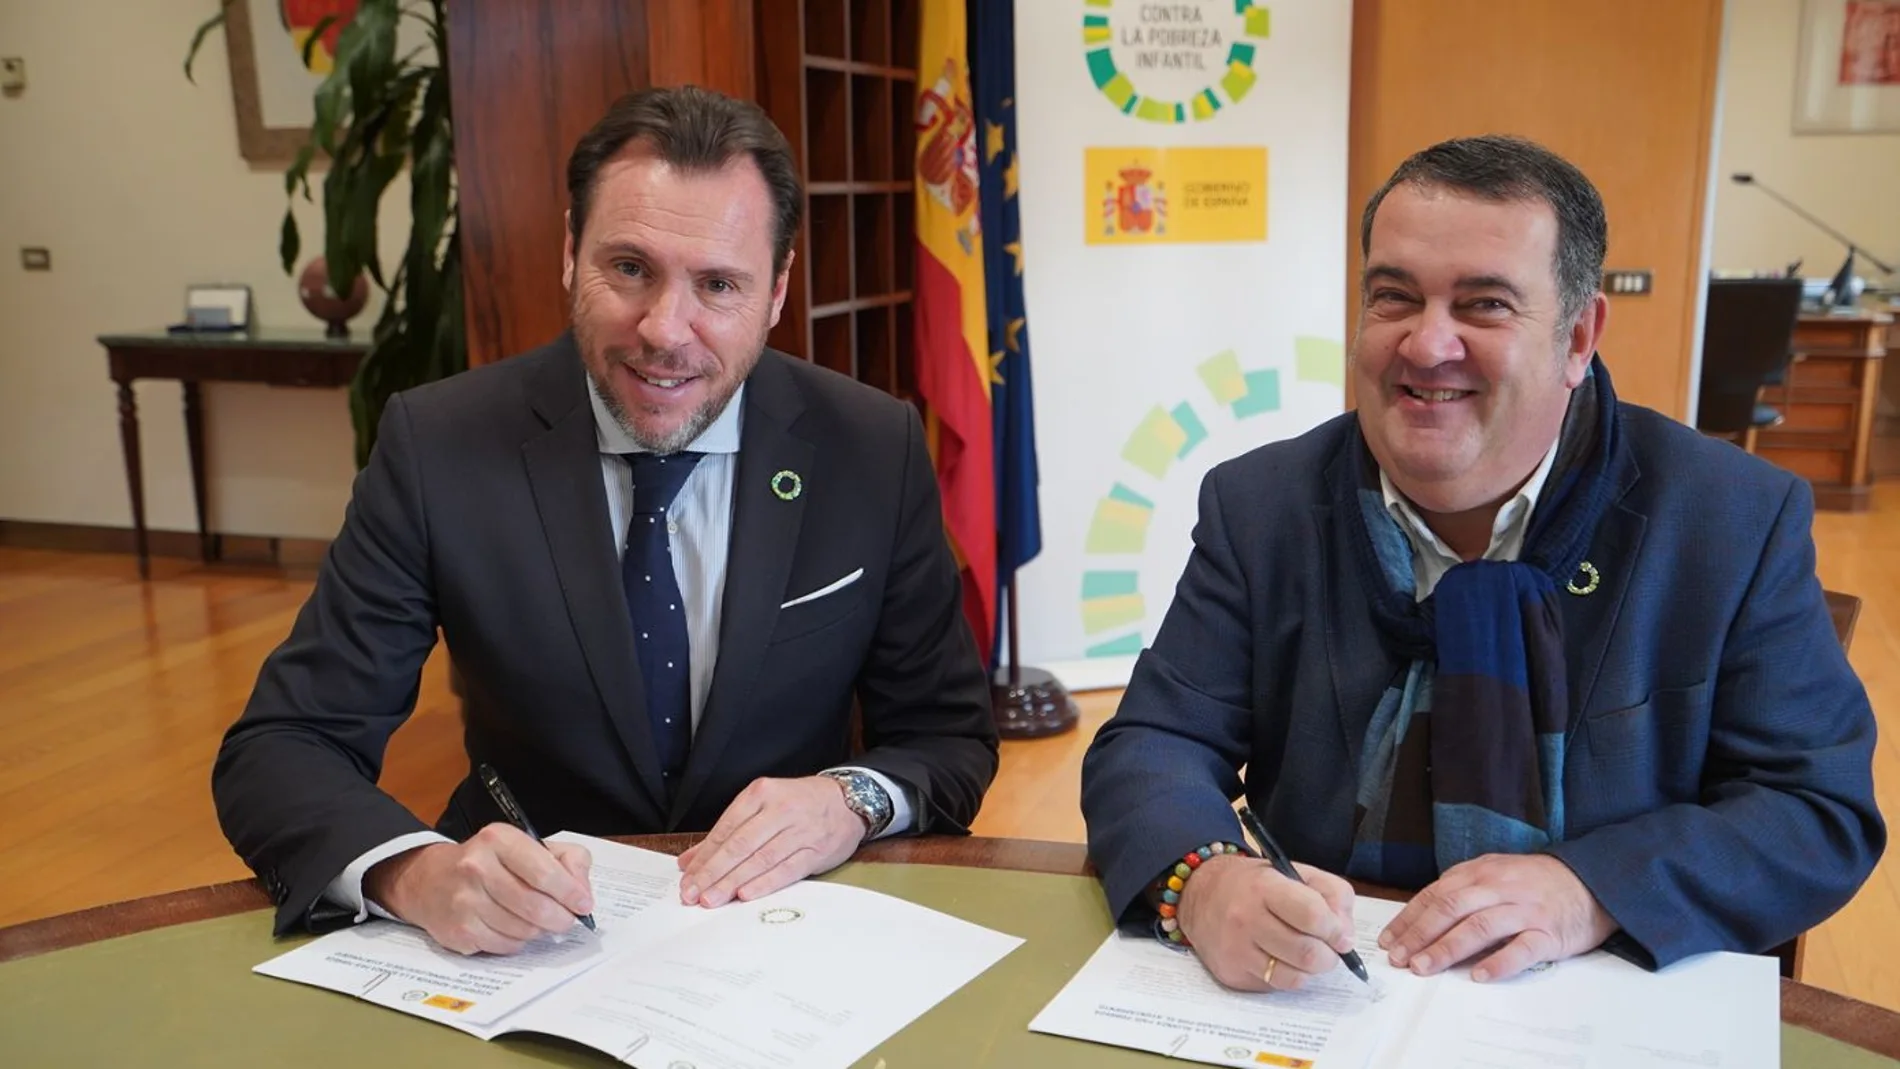 El alcalde de Valladolid, Óscar Puente, y el alto comisionado para la Lucha contra la Pobreza Infantil, Ernesto Gasco Gonzalo, firman un acuerdo para erradicar la Pobreza Infantil